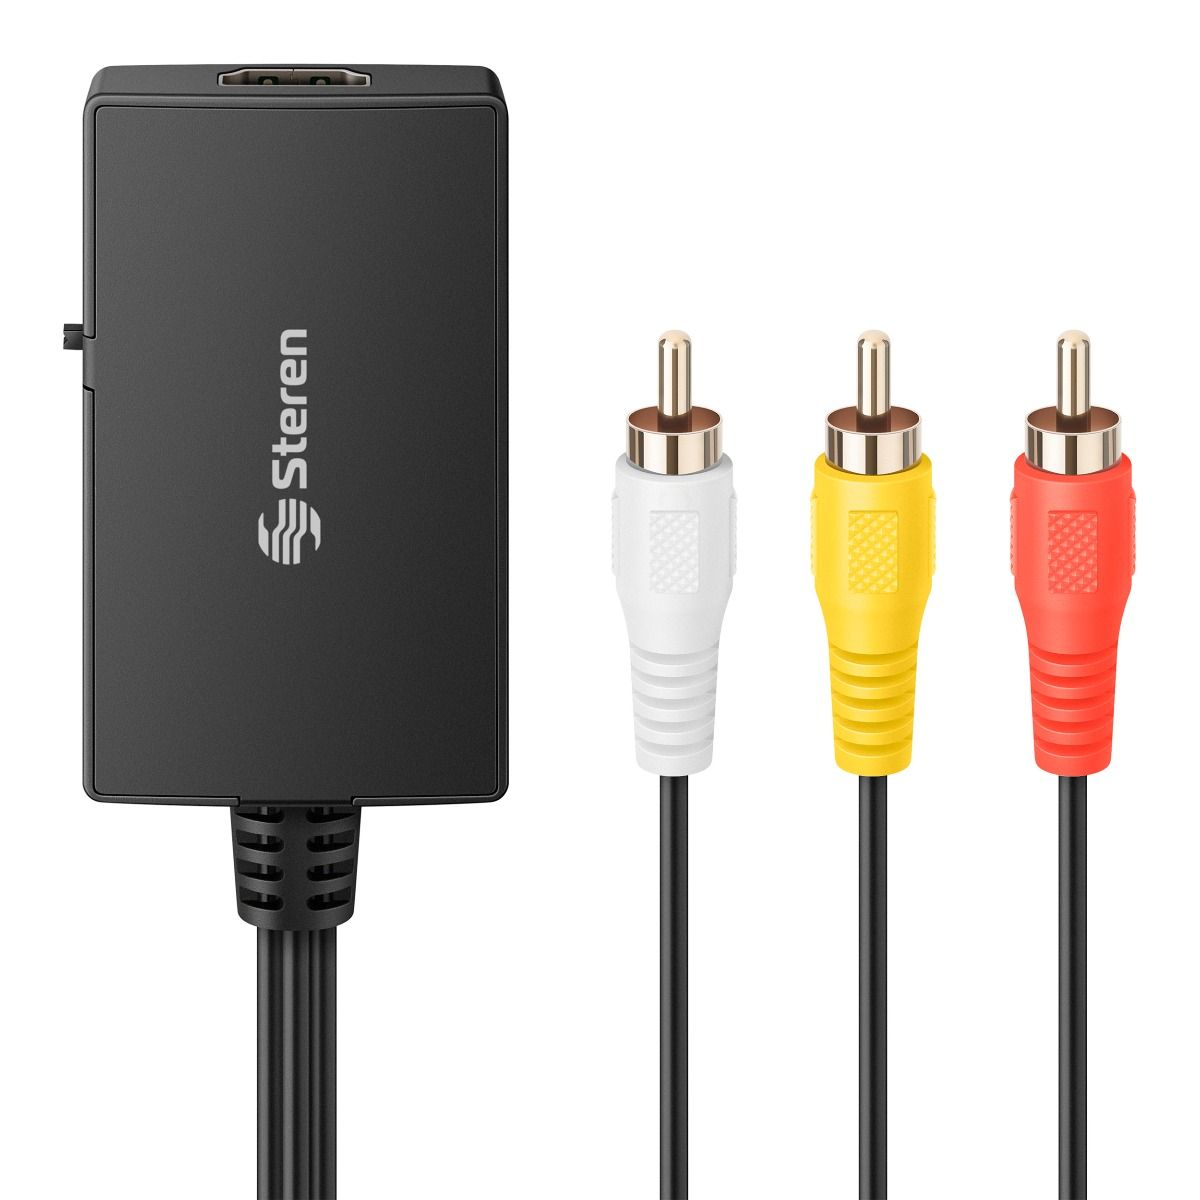 Cable Convertidor Cable adaptador compatible con HDMI a